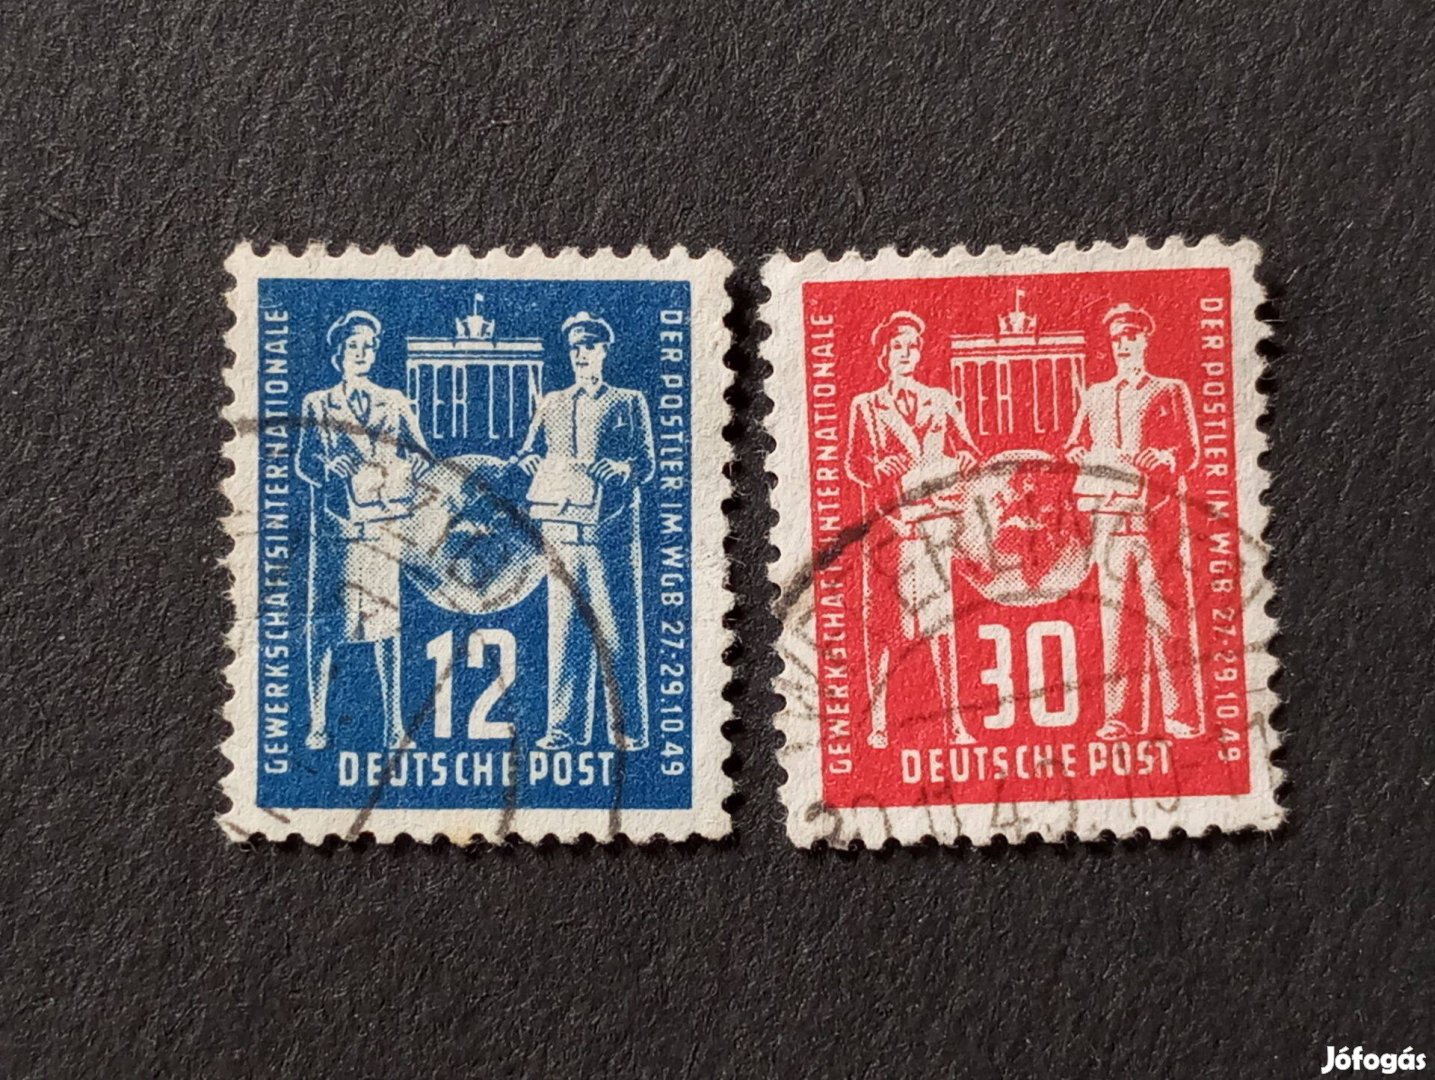 NDK DDR 1949 Postahivatali alkalmazottak kongresszusa komplett bélyegs